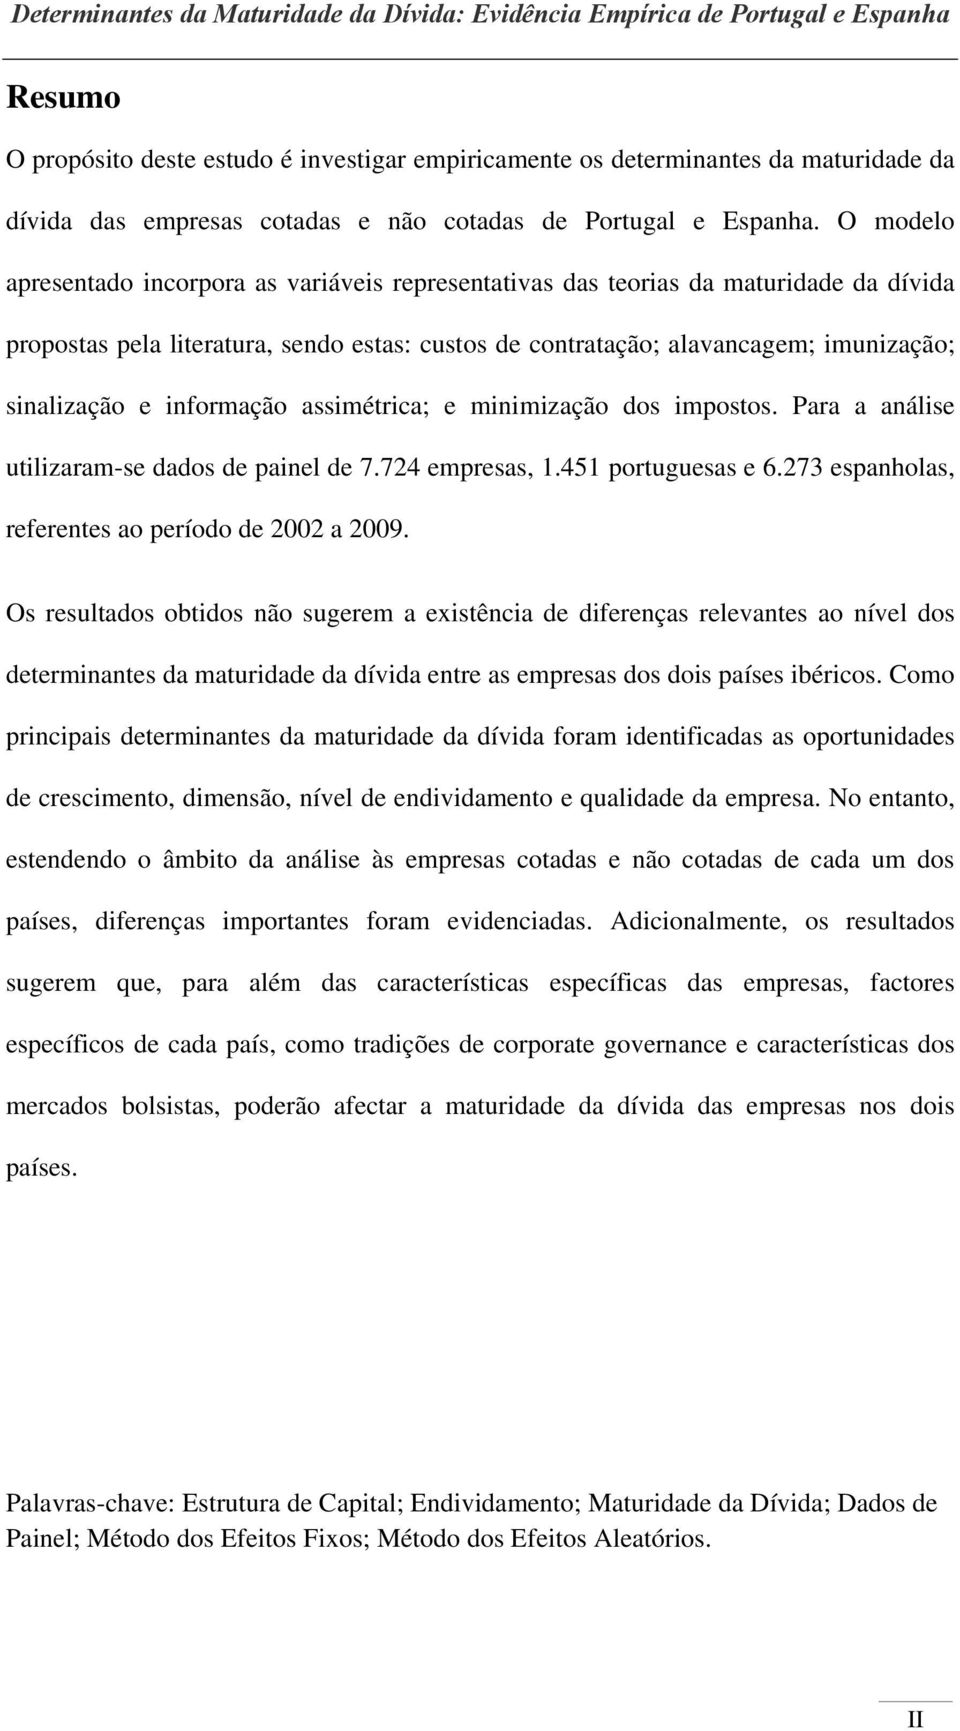 informação assimétrica; e minimização dos impostos. Para a análise utilizaram-se dados de painel de 7.724 empresas, 1.451 portuguesas e 6.273 espanholas, referentes ao período de 2002 a 2009.